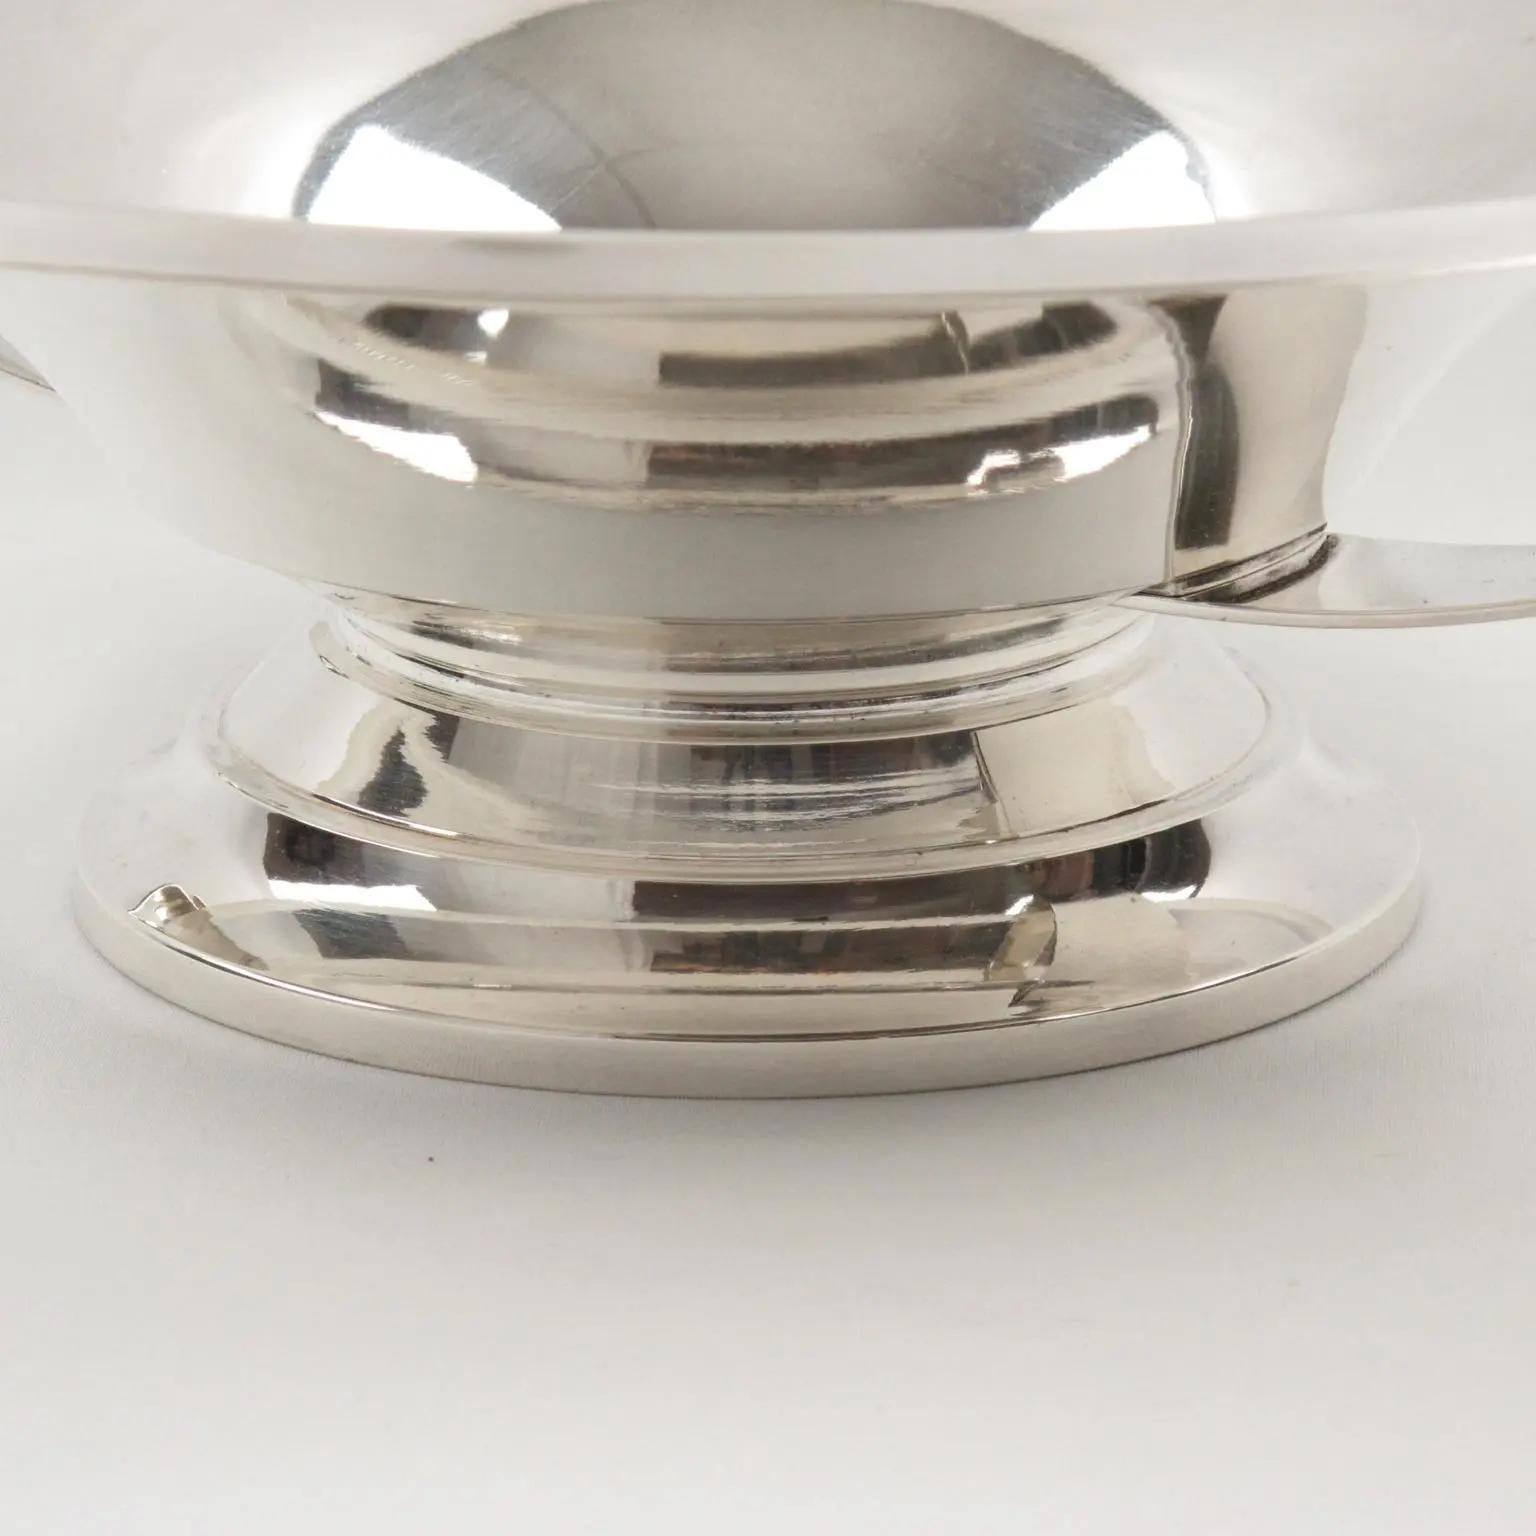 Art Deco Silver Plate Decorative Bowl Centerpiece, France 1930s For Sale 1